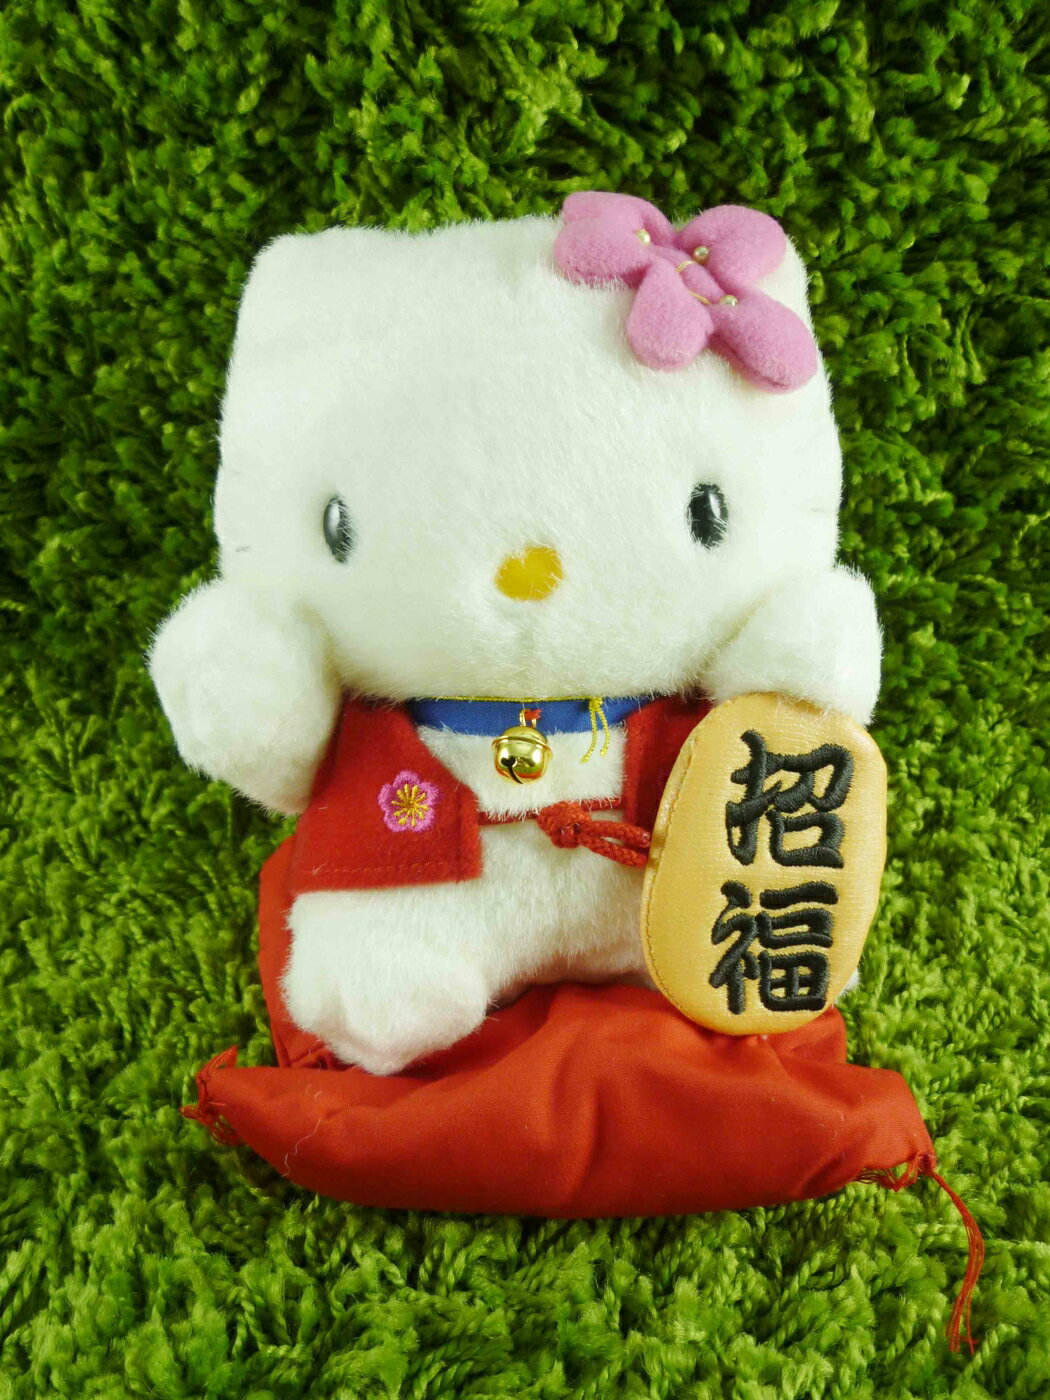 【震撼精品百貨】Hello Kitty 凱蒂貓 KITTY絨毛娃娃-招福圖案-SS 震撼日式精品百貨